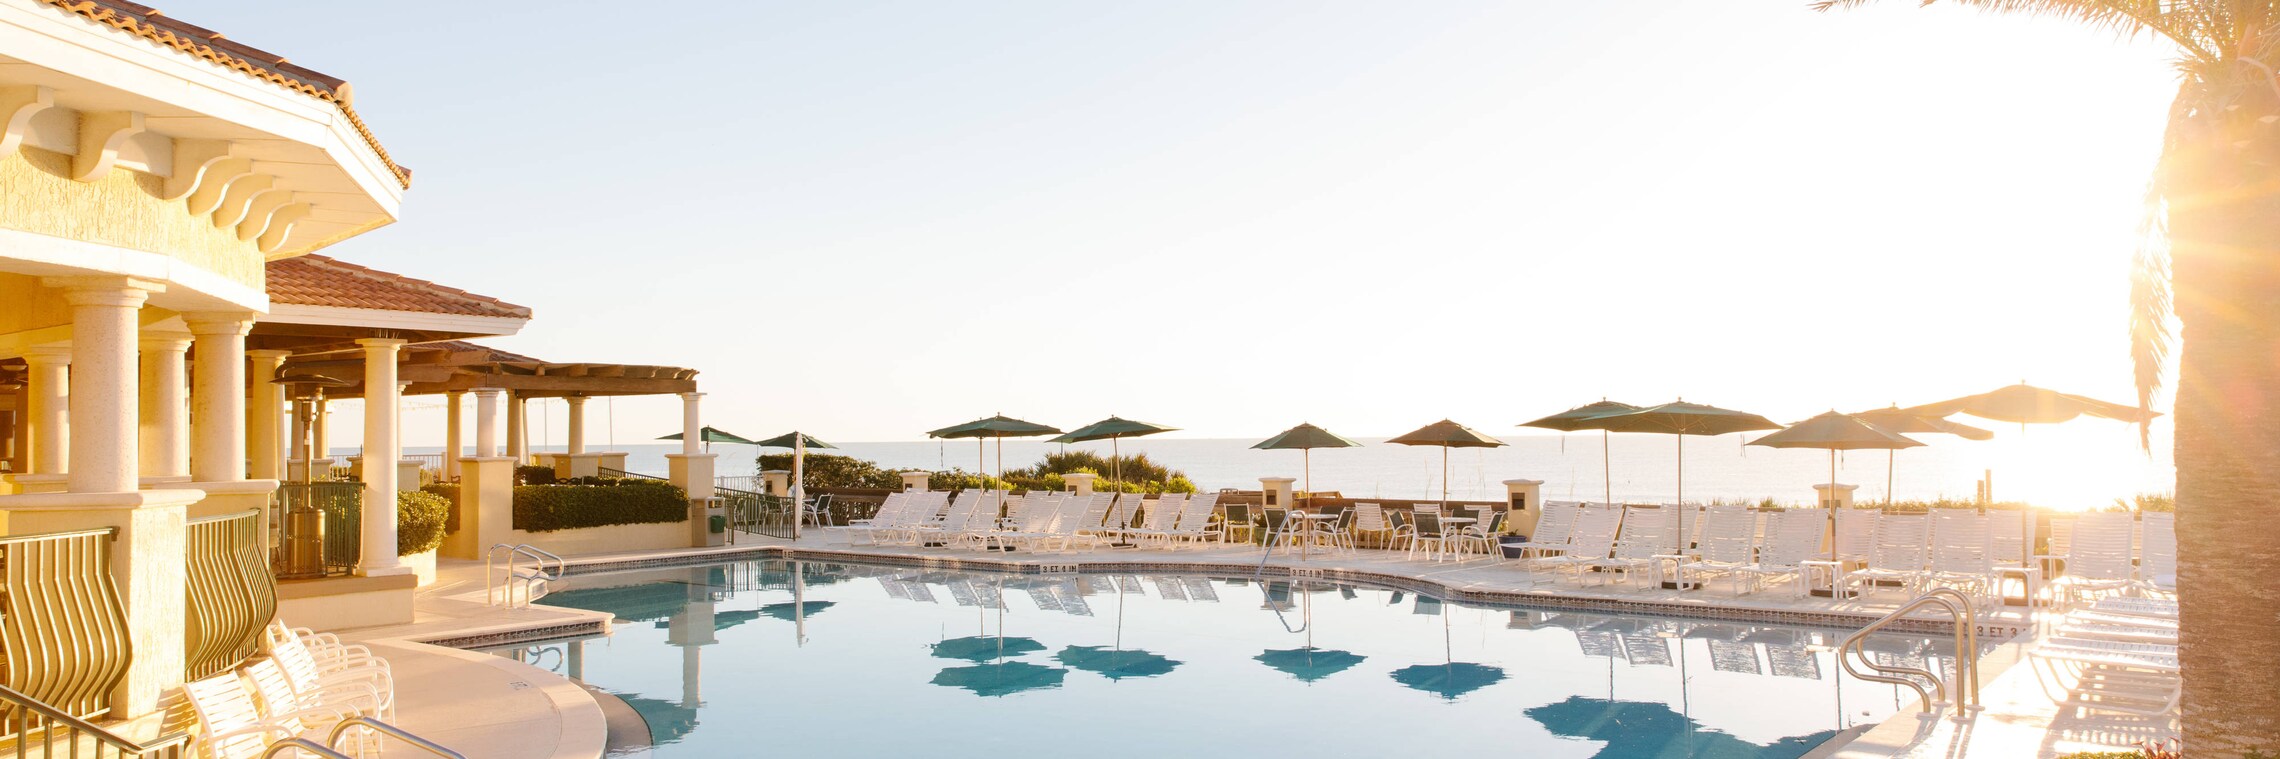 Serenata Beach Club - Pool